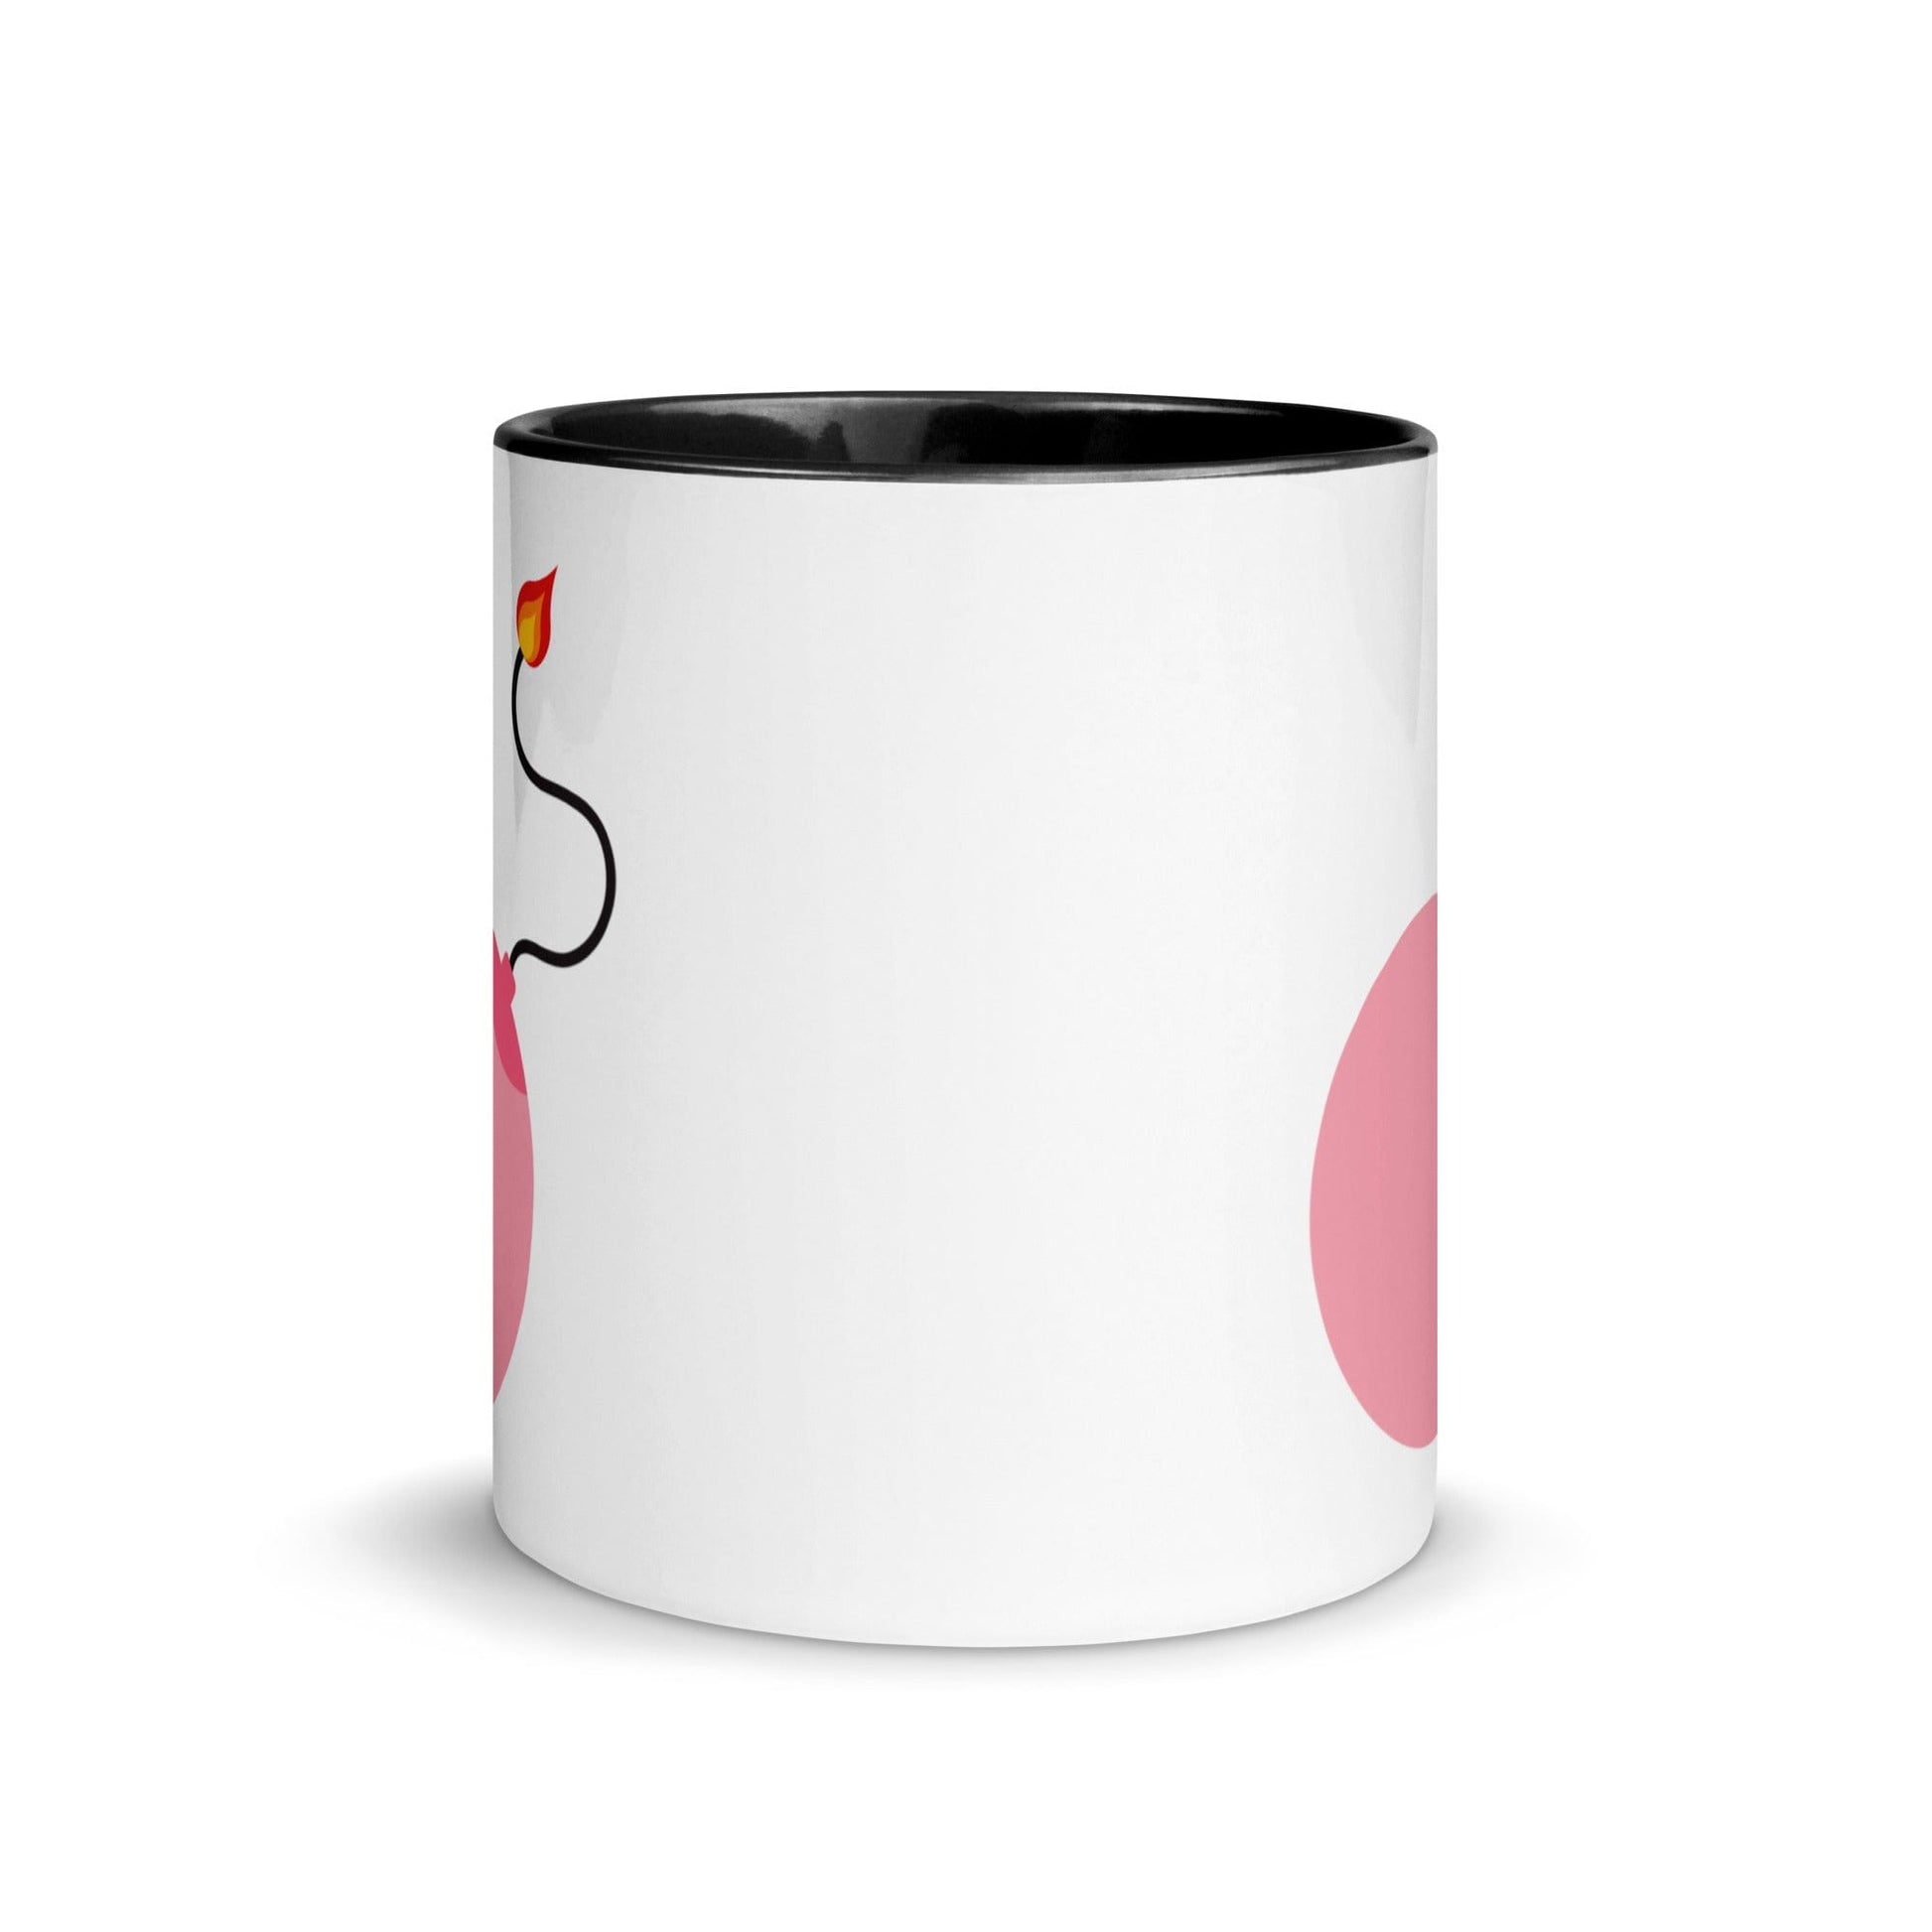 white-and-black-feminist-ceramic-mug-by-feminist-define